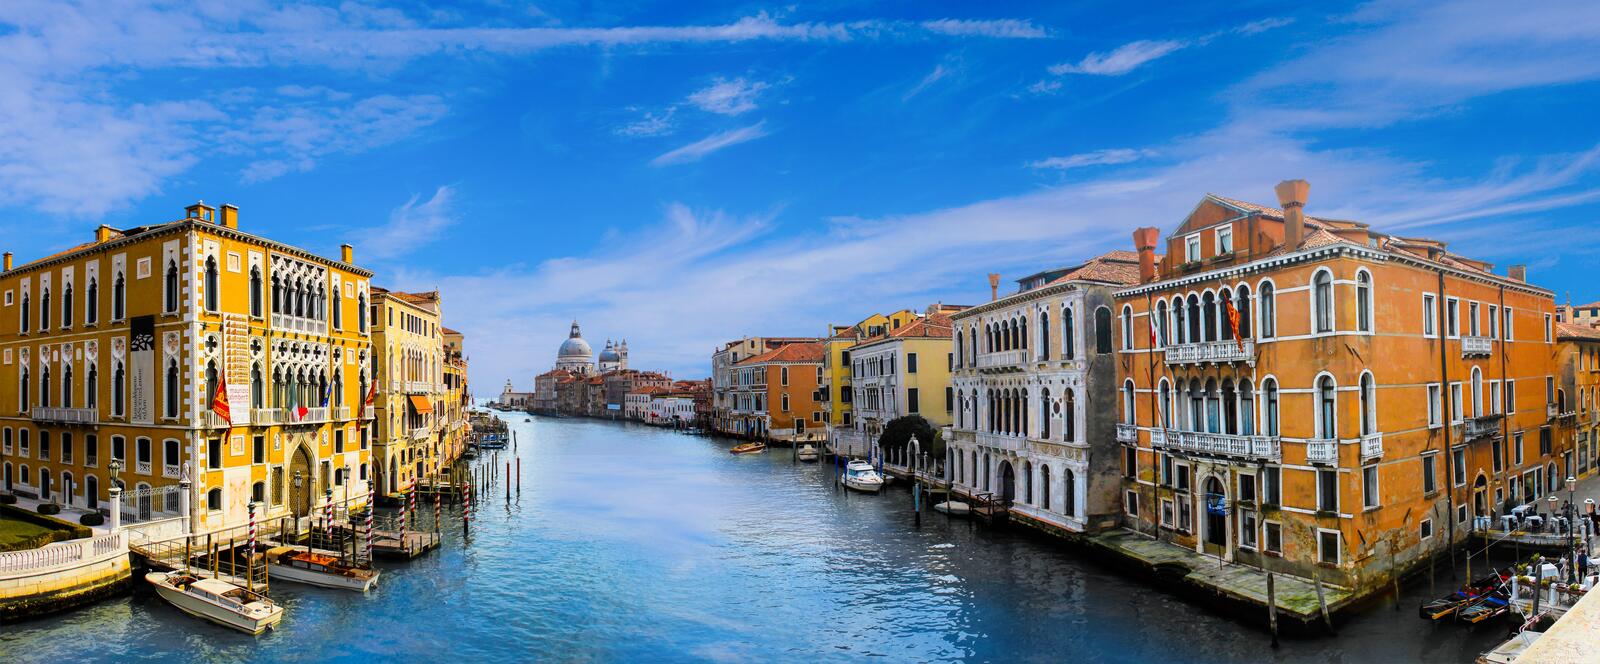 Обои Венеция Италия Гранд-канал в Венеции на рабочий стол